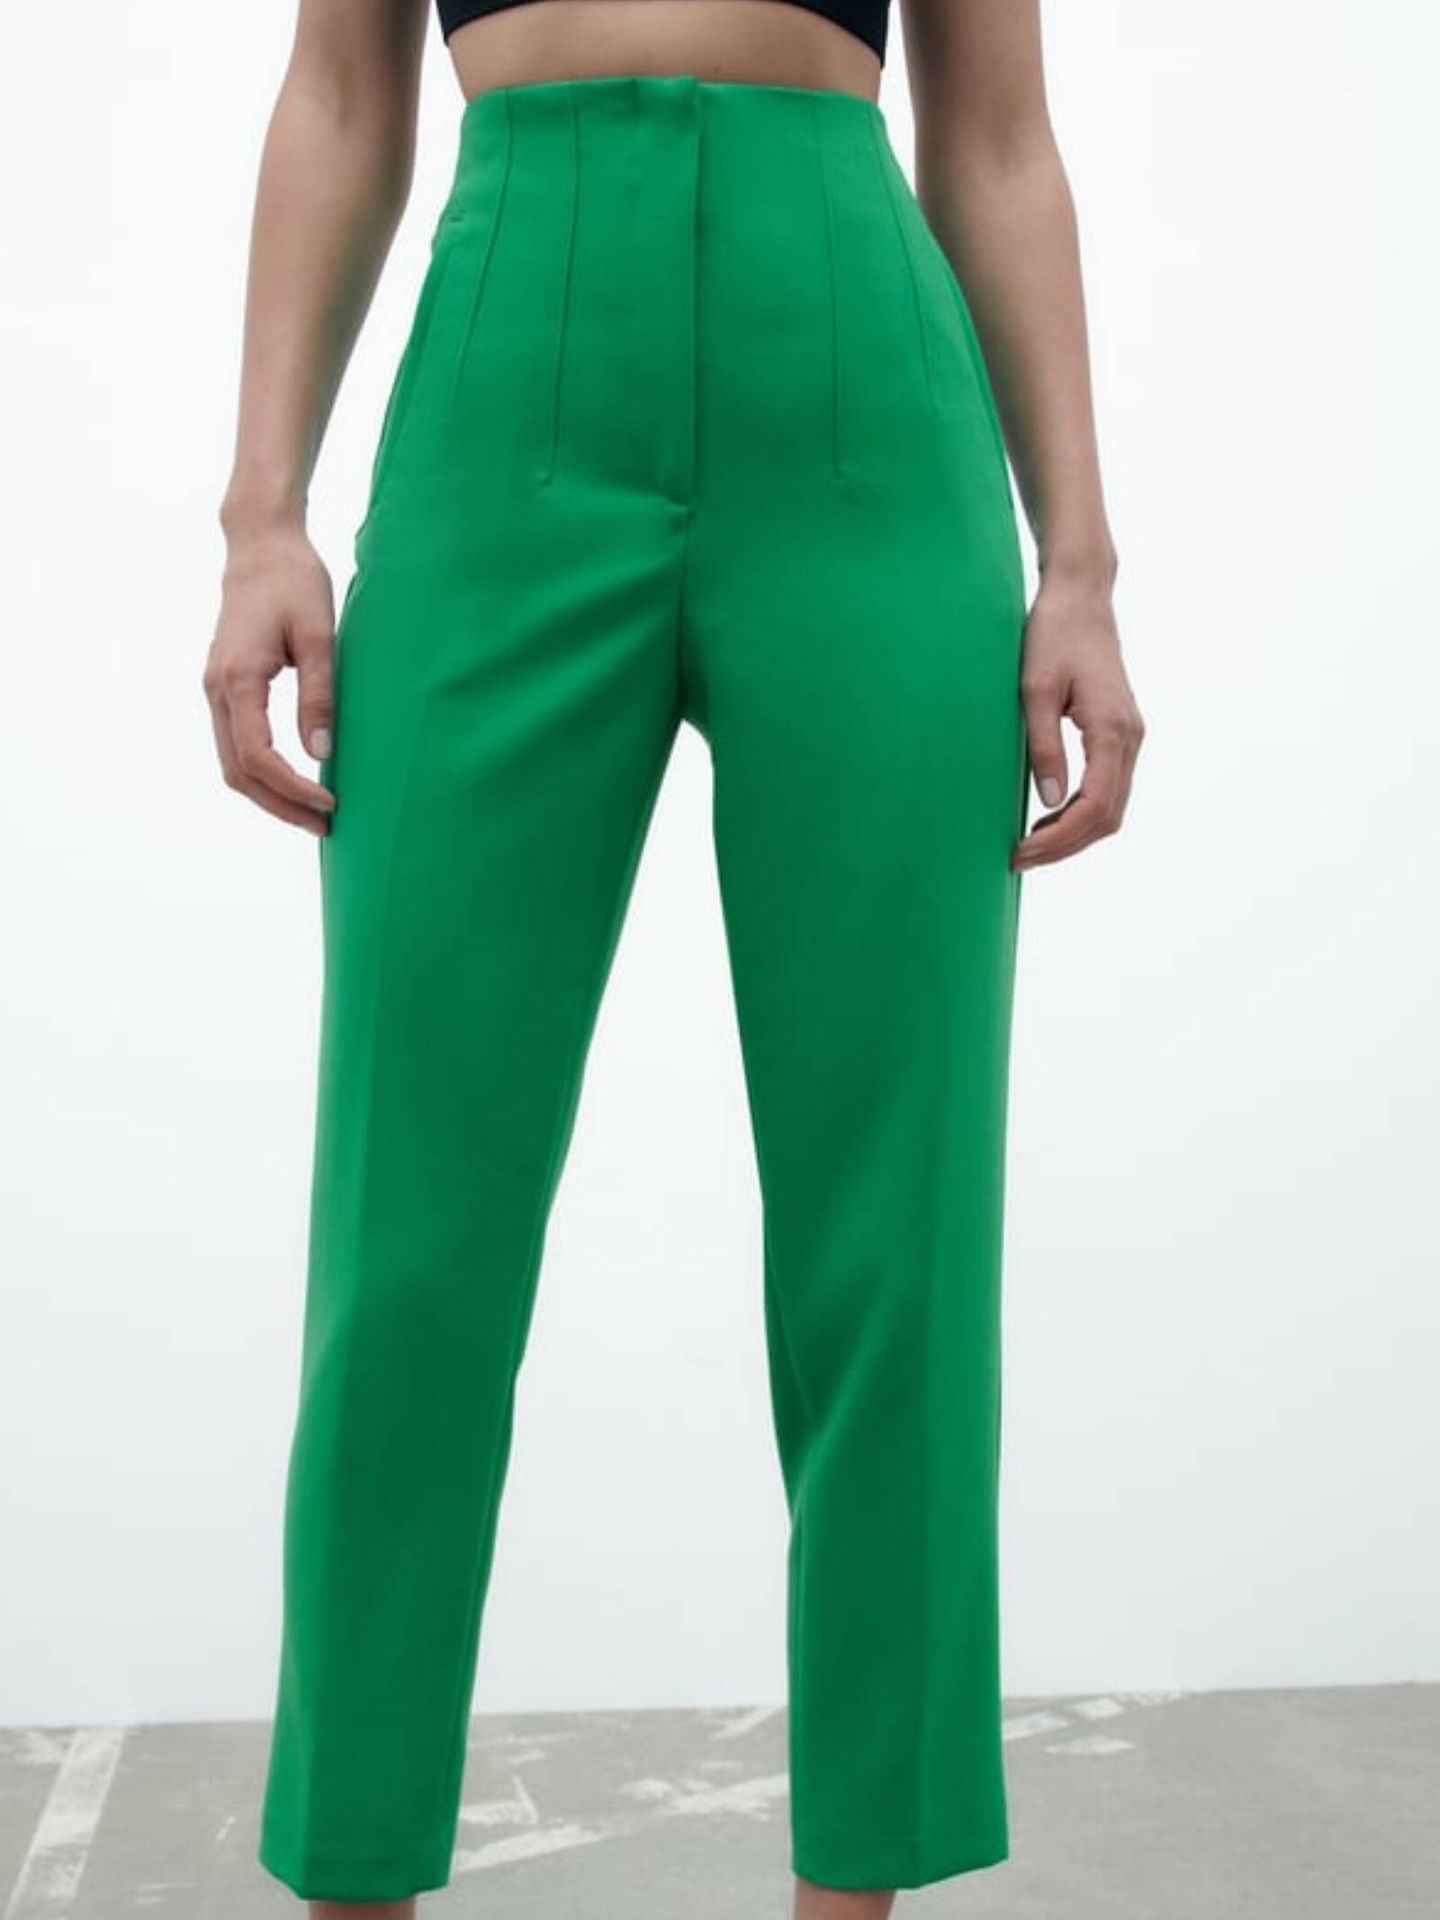 De Zara a H&M: 5 pantalones verdes para recrear el último look de Nuria Roca